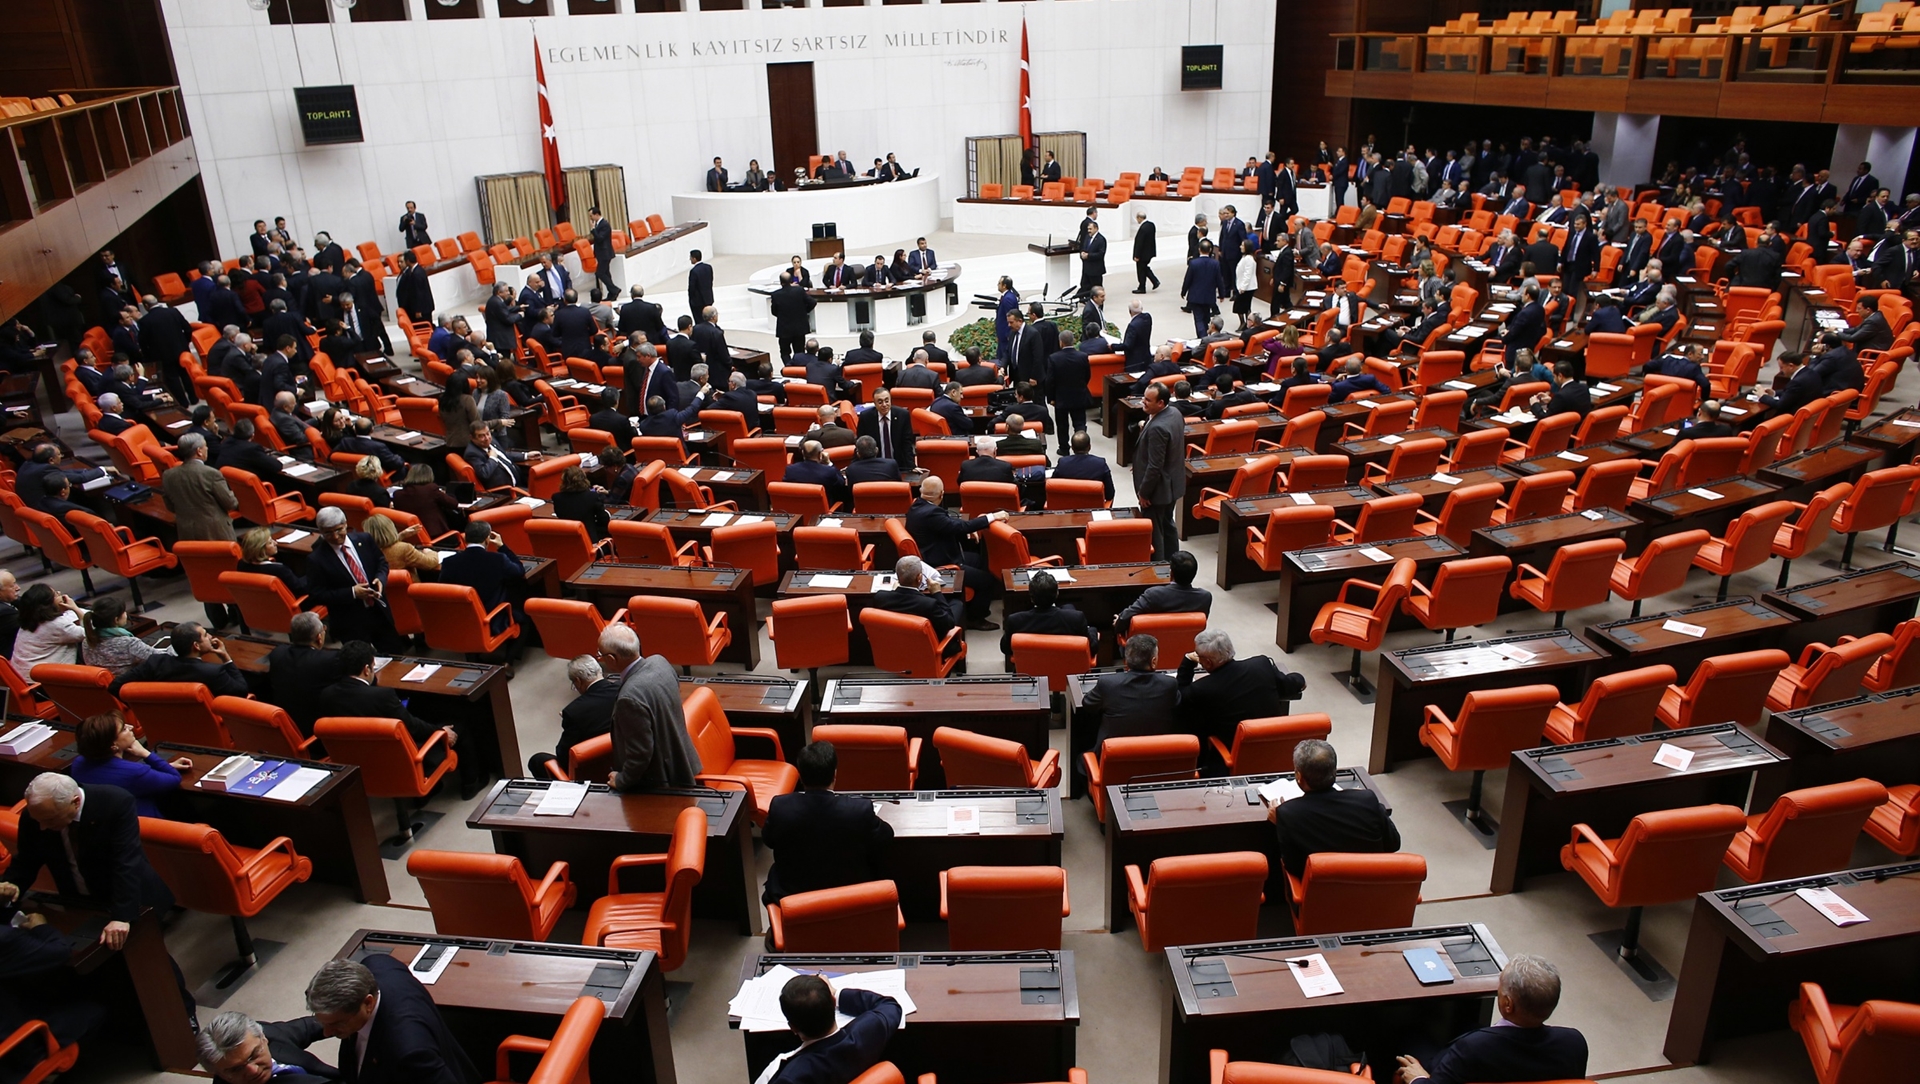 Թուրքիայի ընդդիմադիր պատգամավորները բողոքի ակցիա են իրականացնում խորհրդարանում